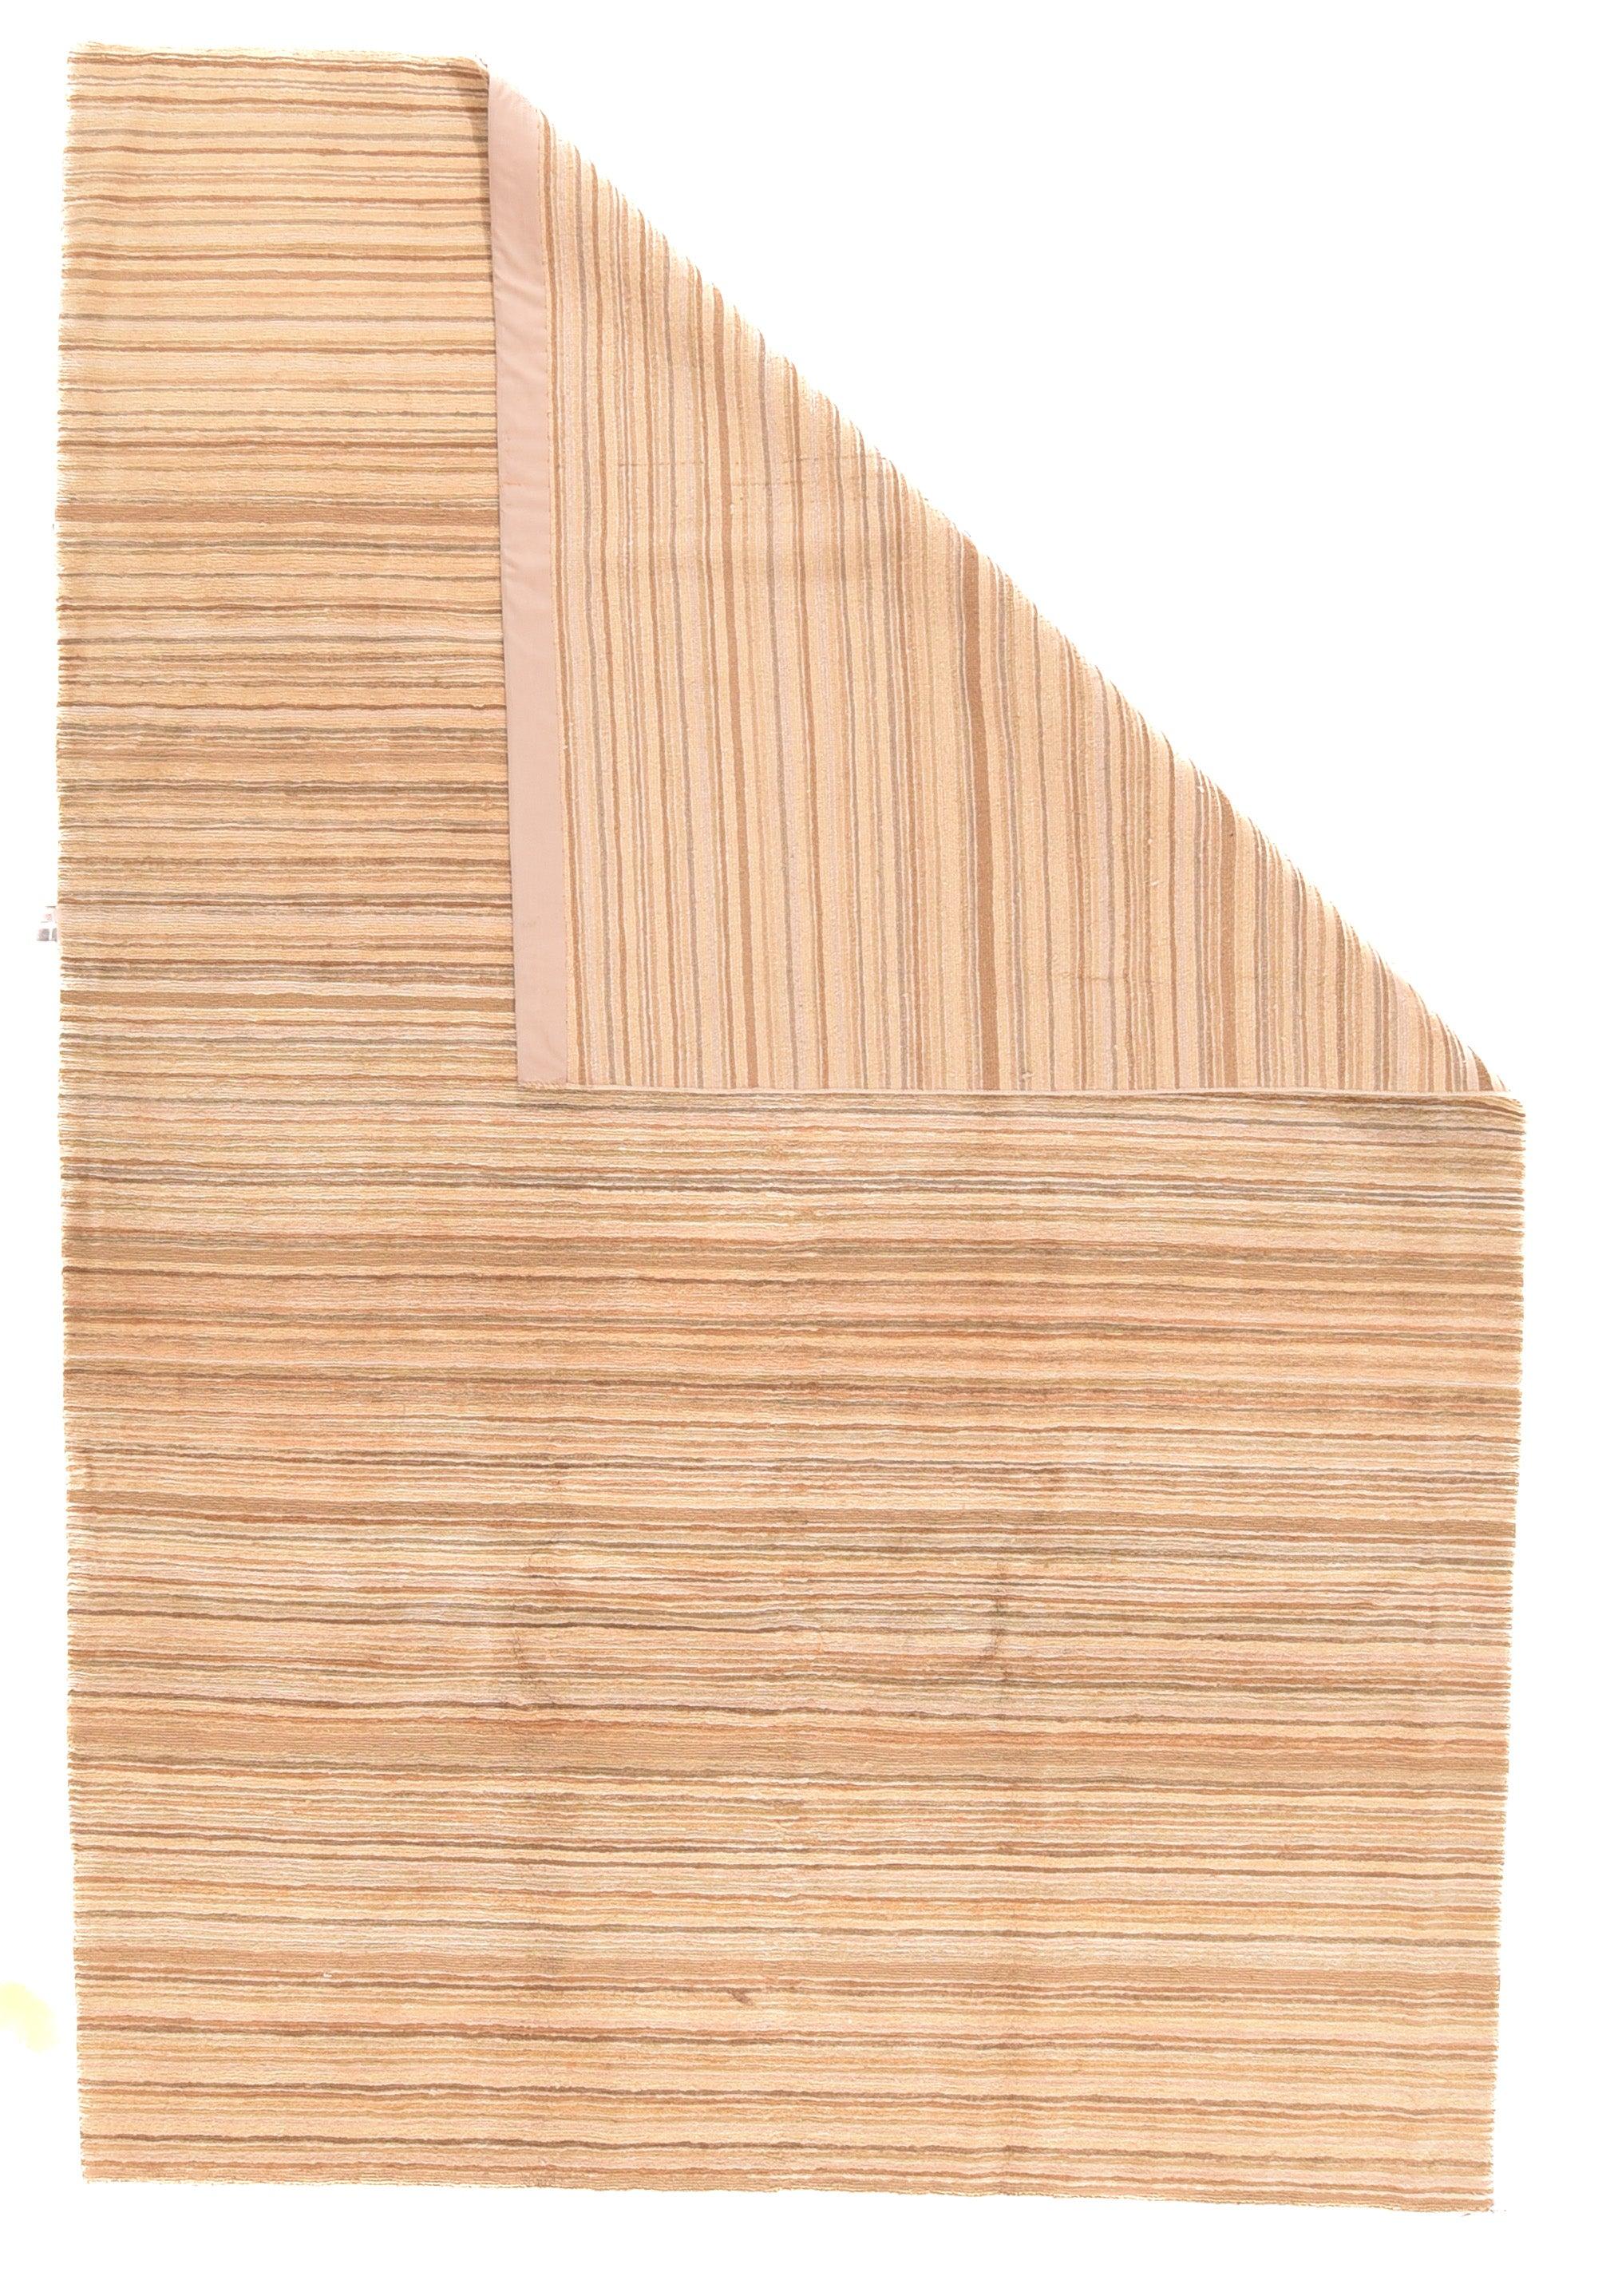 Der kleine Teppich/die große Streuung zeigt eine minimalistische, randlose Komposition aus horizontalen Linien in Braun-, Rost-, Braun- und Beigetönen, die sich nach Lust und Laune des Knüpfers biegen, verkleinern oder dehnen. Einstellbare